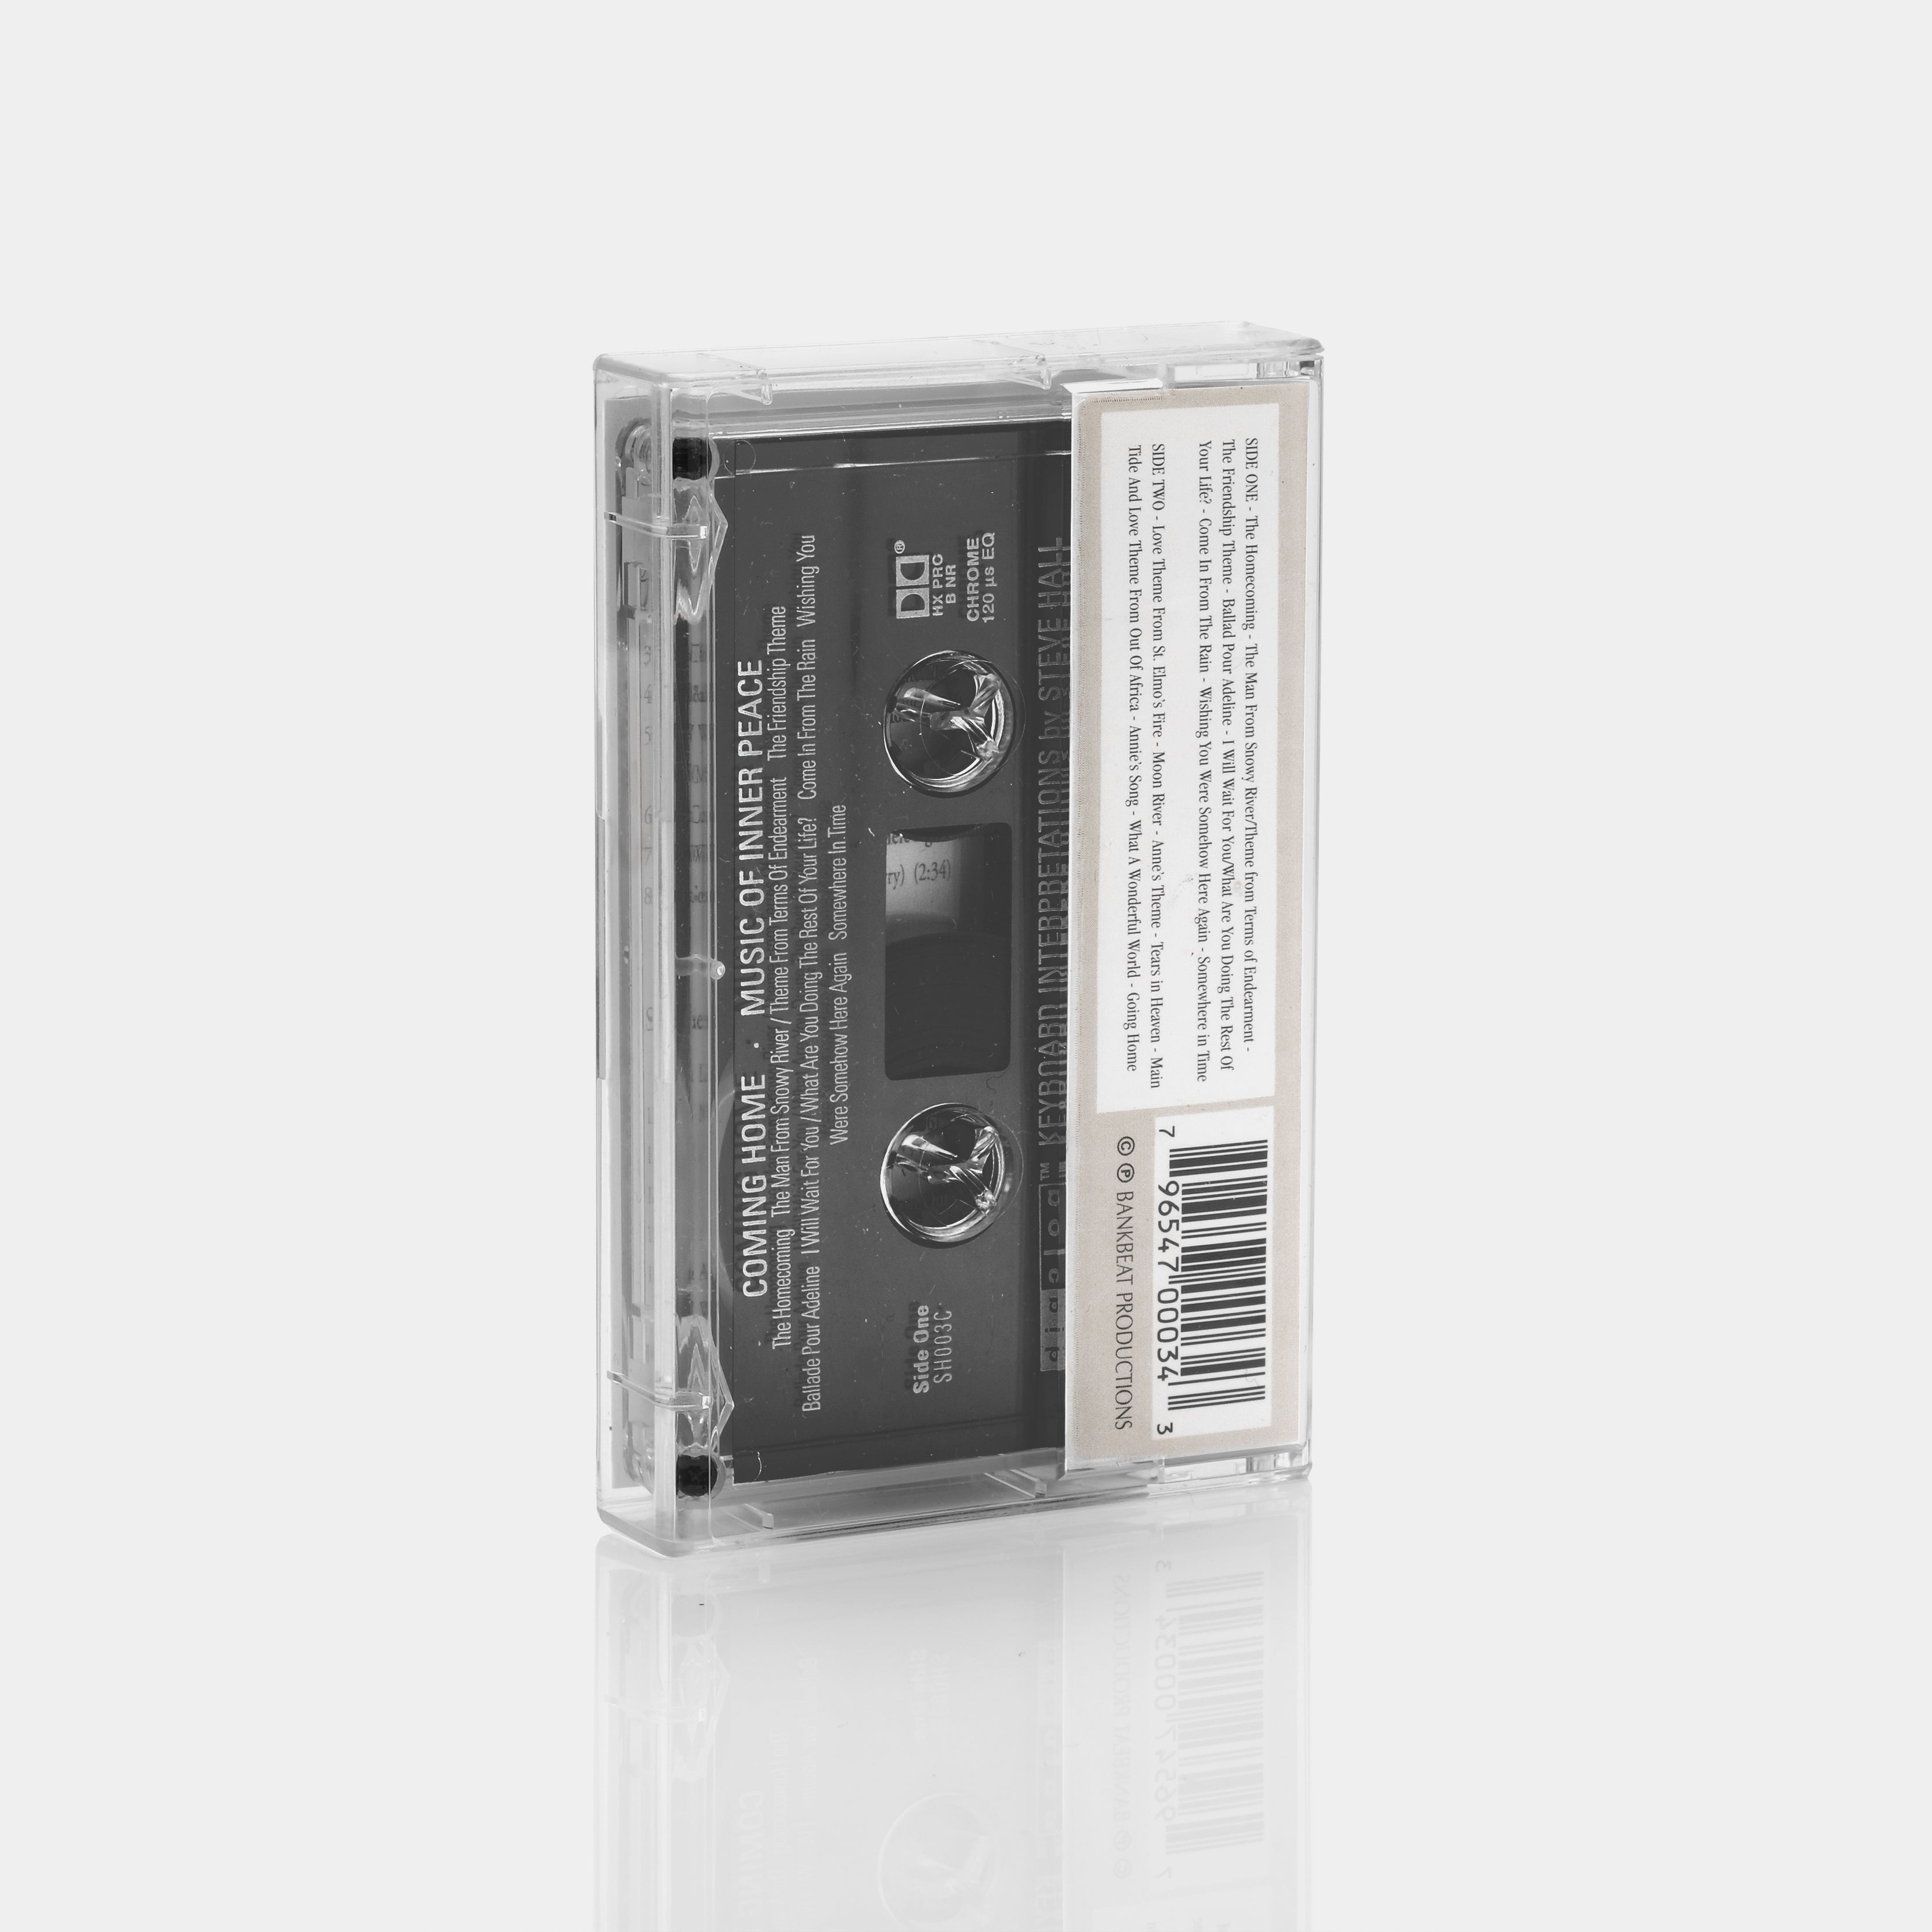 Steve Hall - Coming Home (Music Of Inner Peace) Cassette Tape